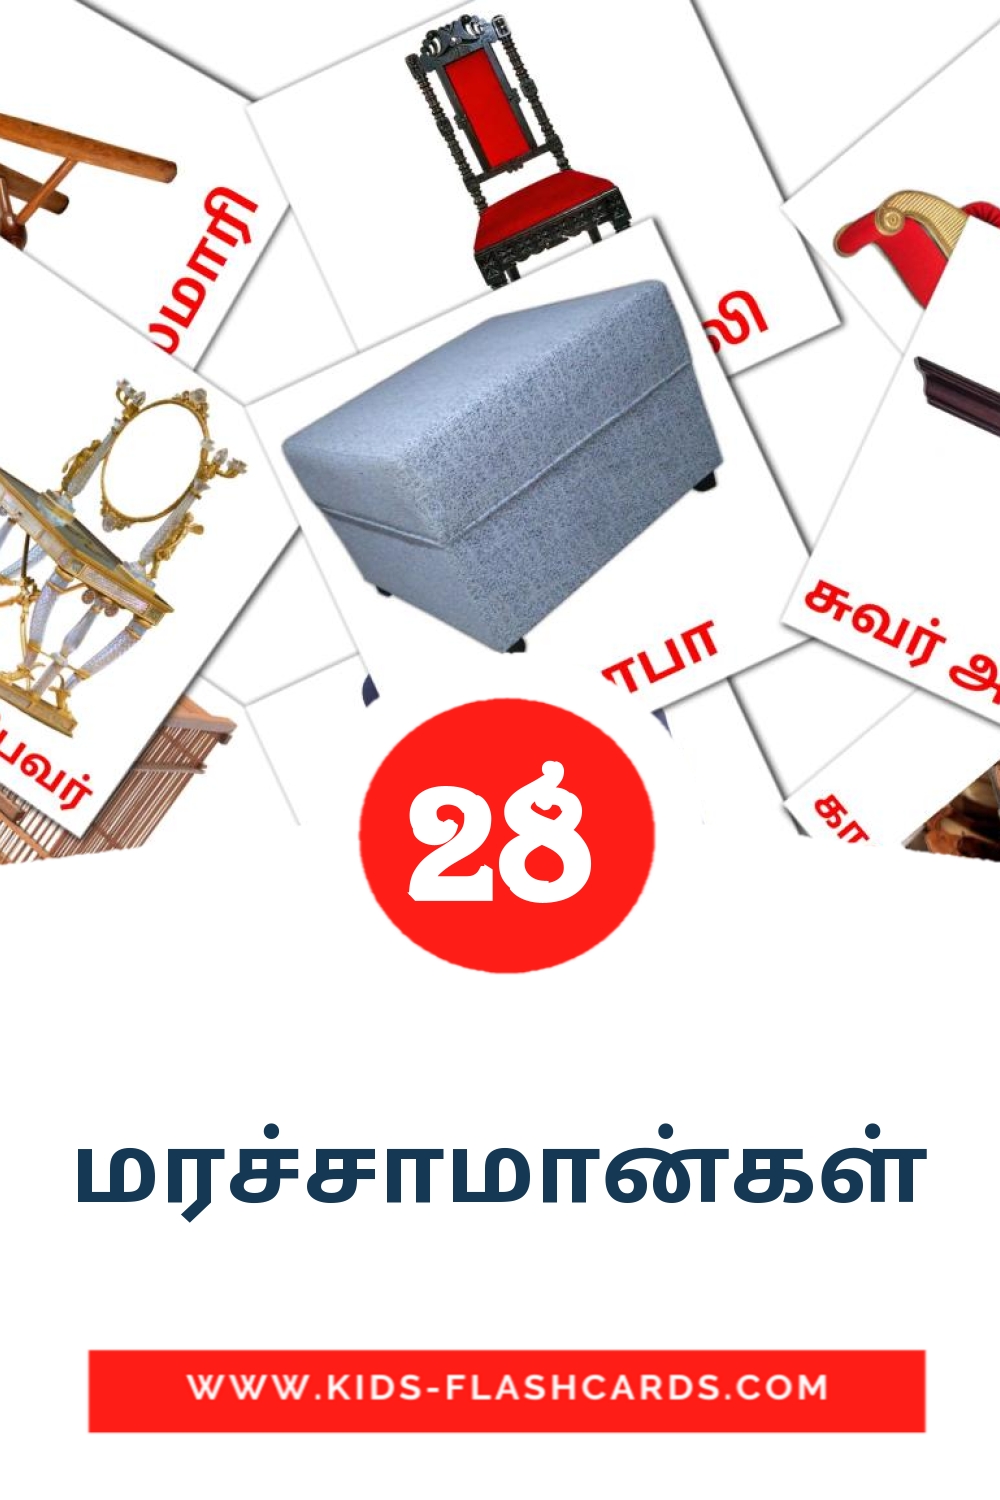 28 மரச்சாமான்கள் fotokaarten voor kleuters in het tamil